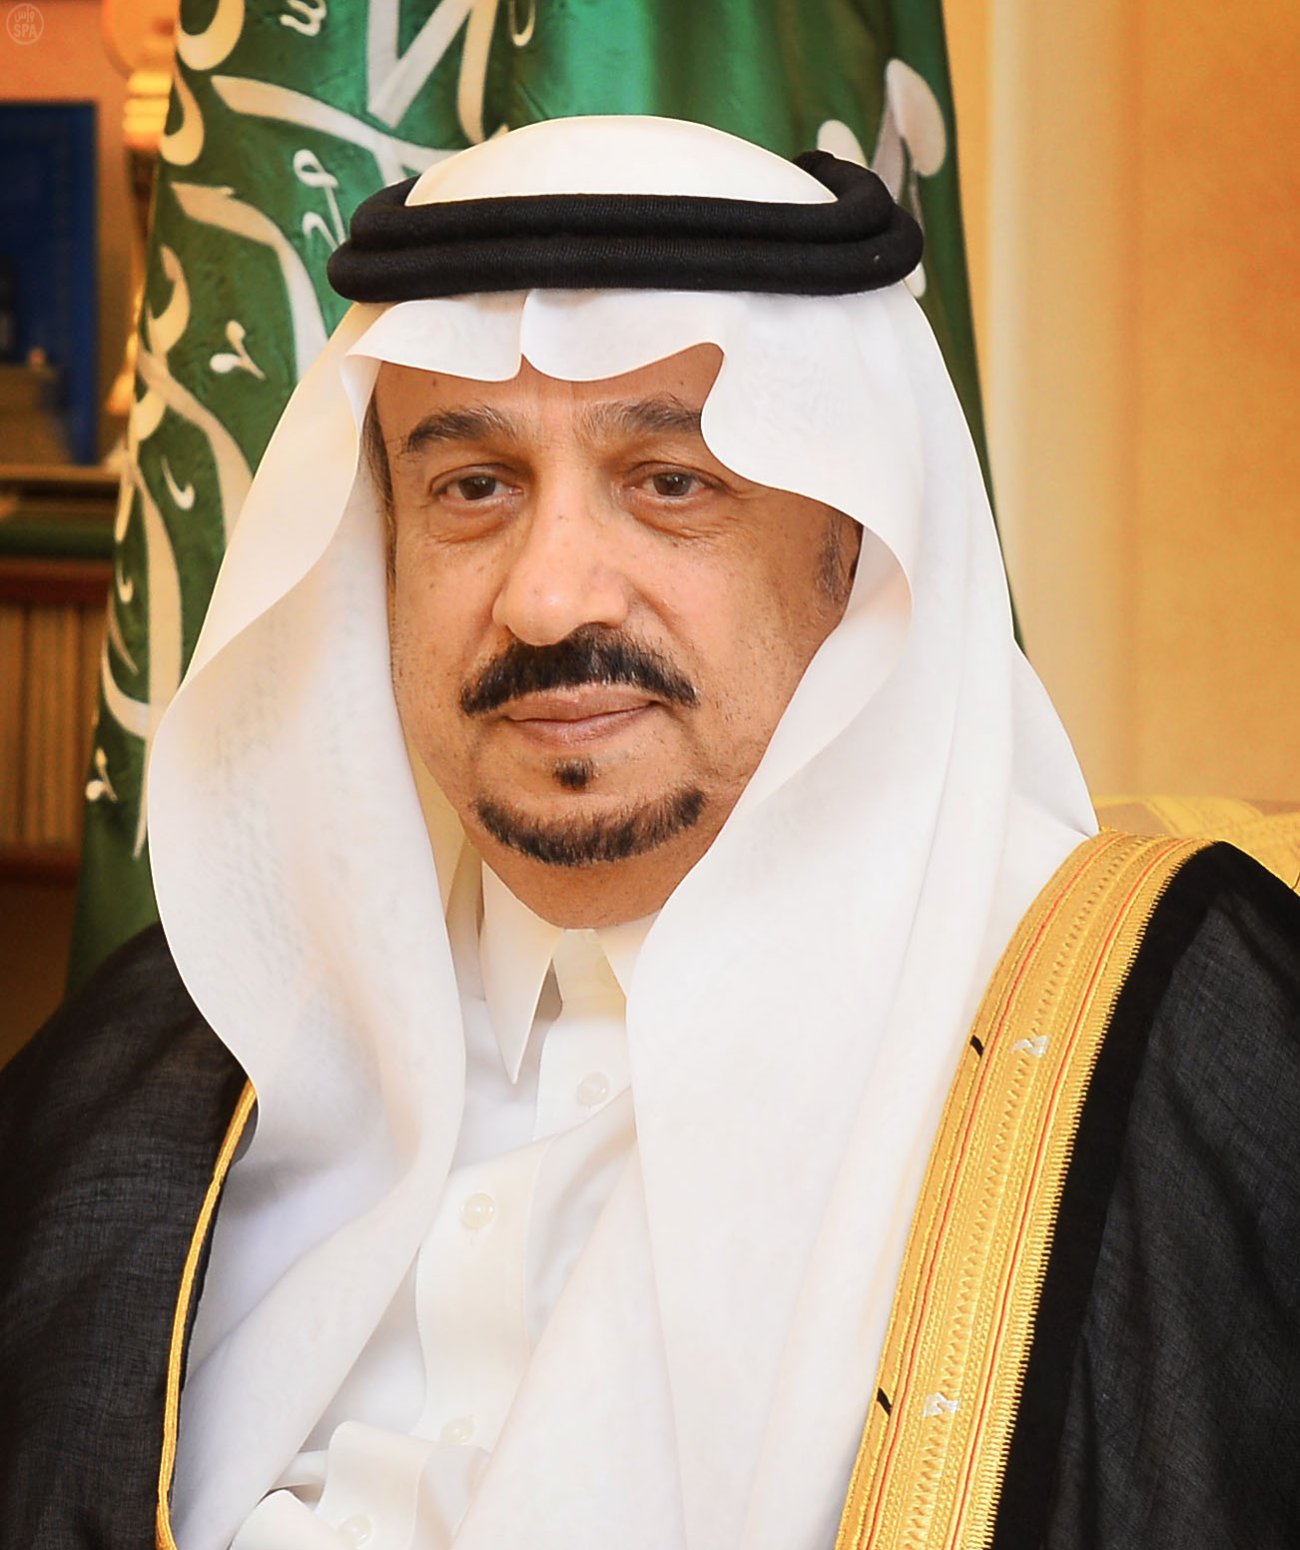 فيصل بن بندر في مجلس الشورى: التنمية في الرياض تسير وفق استراتيجية بعيدة المدى